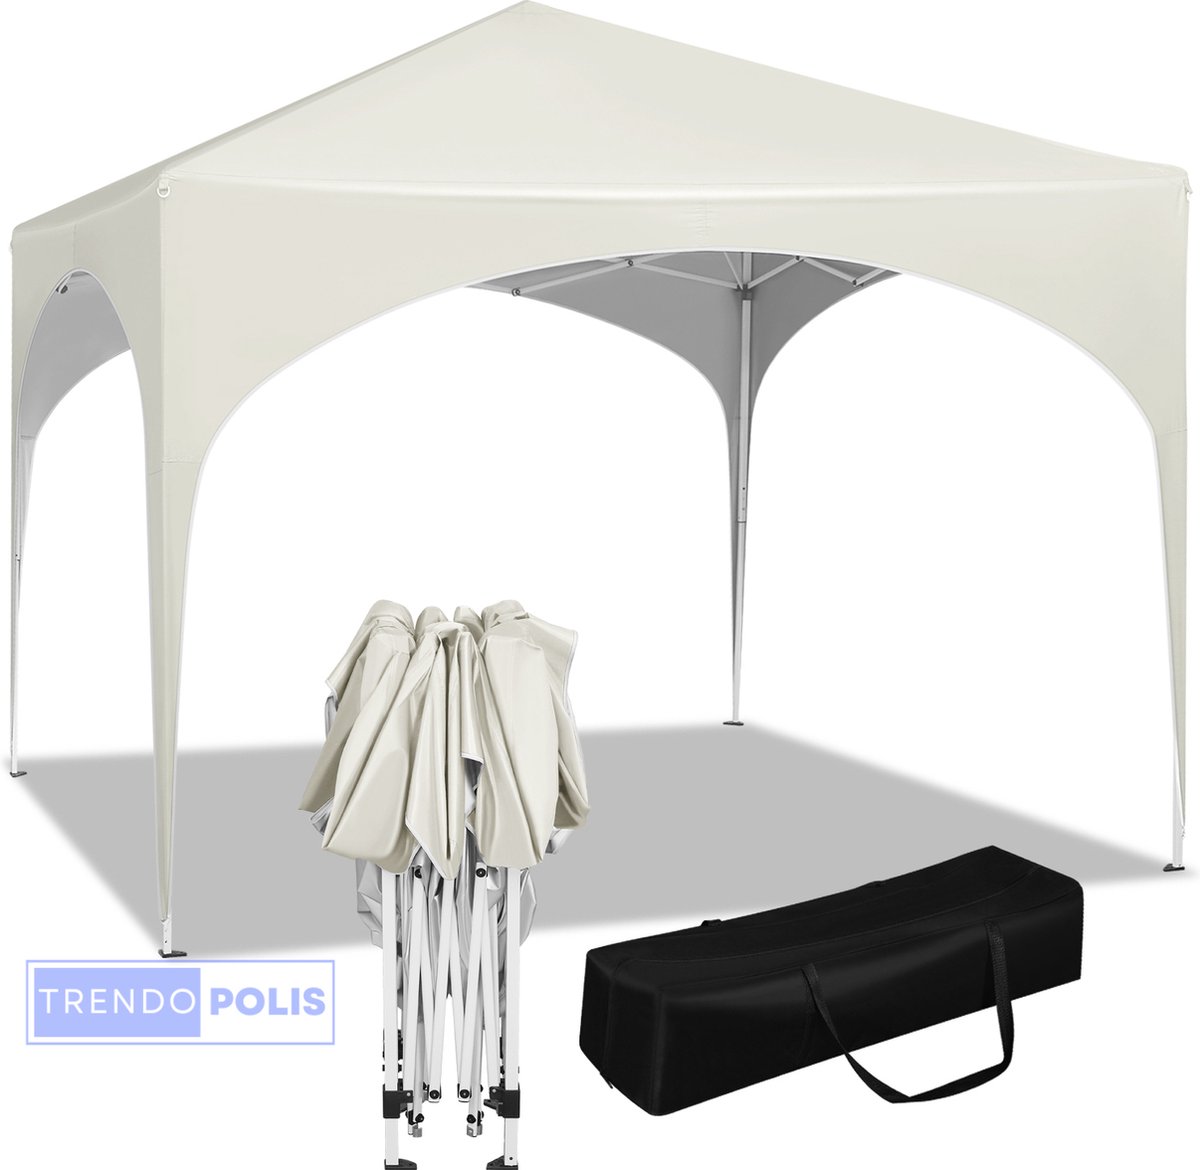 Trendopolis Party Tent 3x3 Waterdicht Stijlvolle en Stevige Oplossing voor Outdoor Evenementen Bescherming en Comfort voor Buitenactiviteiten Partytent Opvouwbaar Luce Design